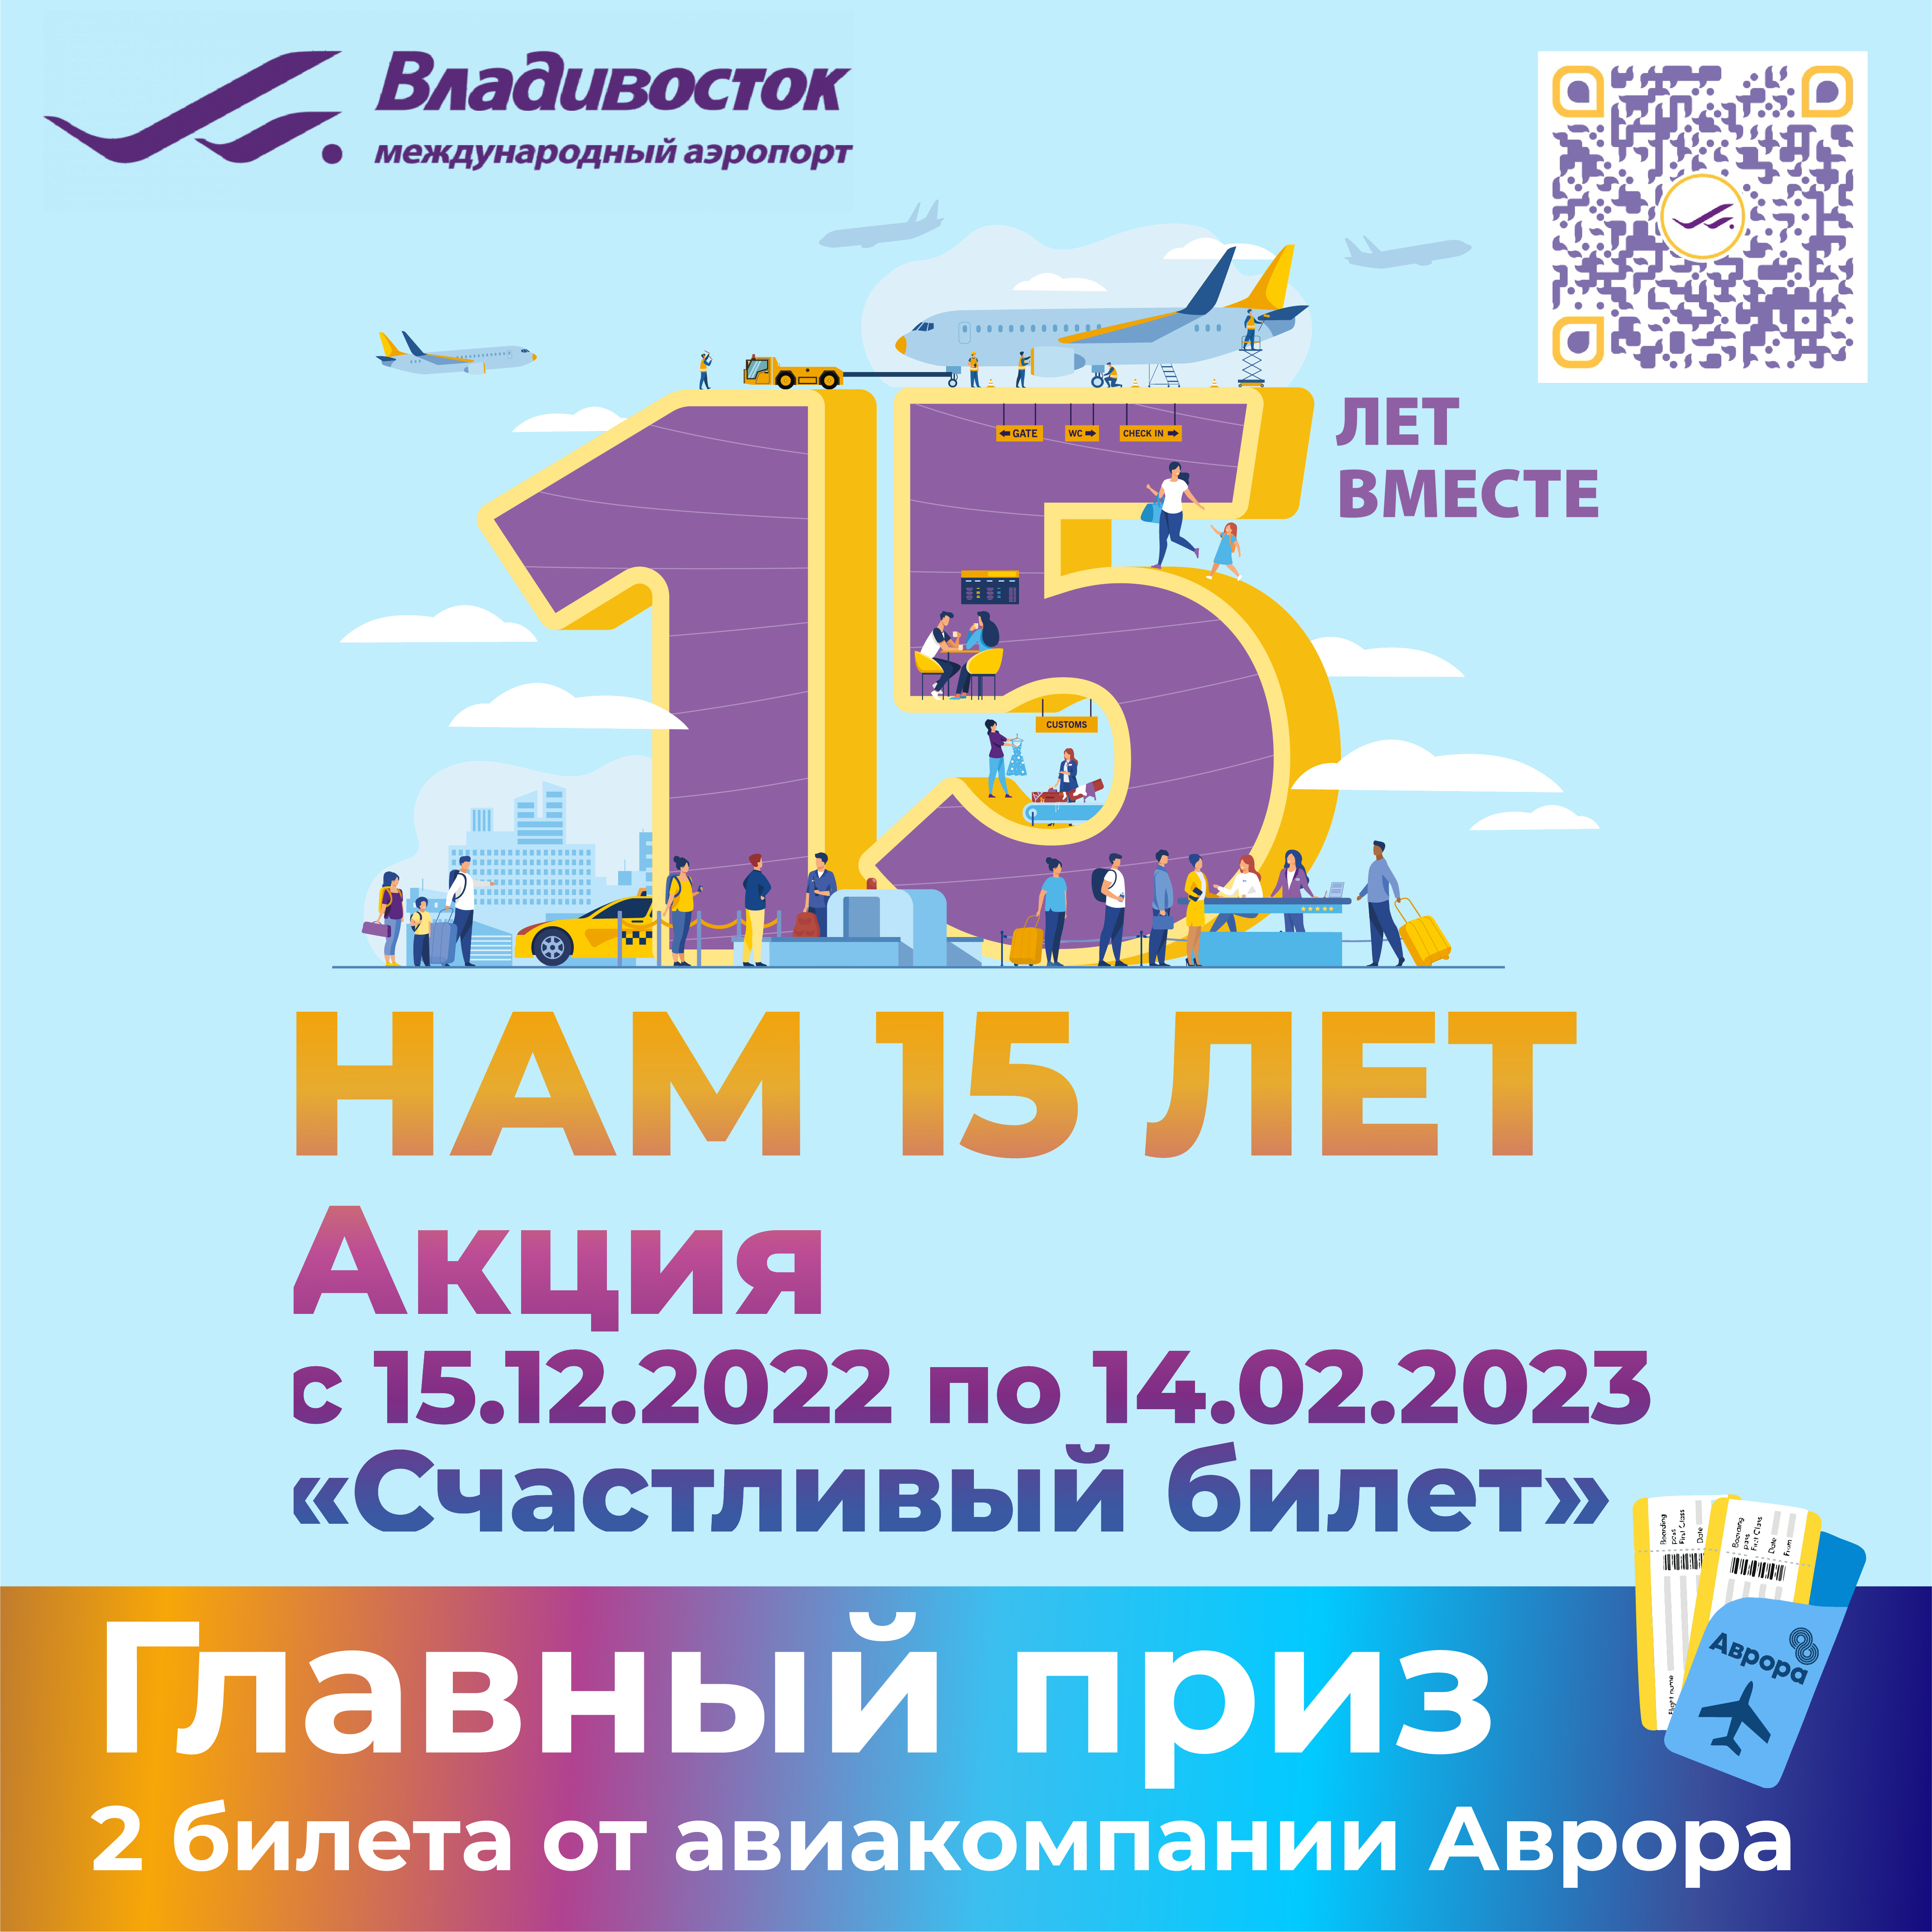 Международный аэропорт Владивосток запускает  «Счастливый билет»